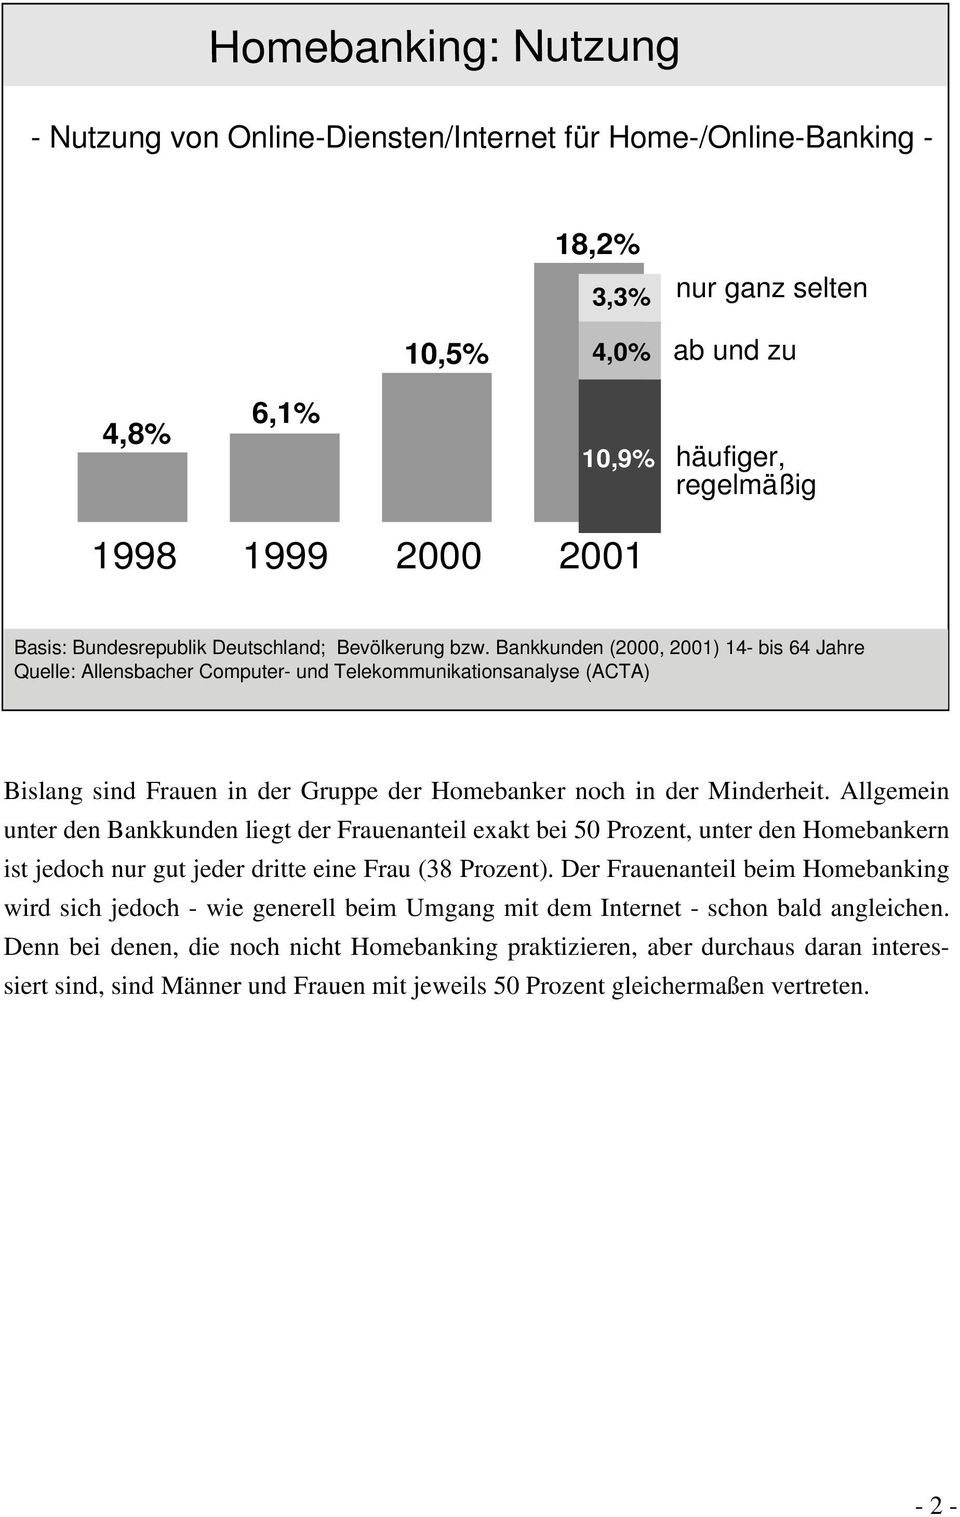 Bankkunden (2000, 2001) 14- bis 64 Jahre Quelle: Allensbacher Computer- und Telekommunikationsanalyse (ACTA) Basis: Bundesrepublik Deutschland, Bev lkerung bzw.